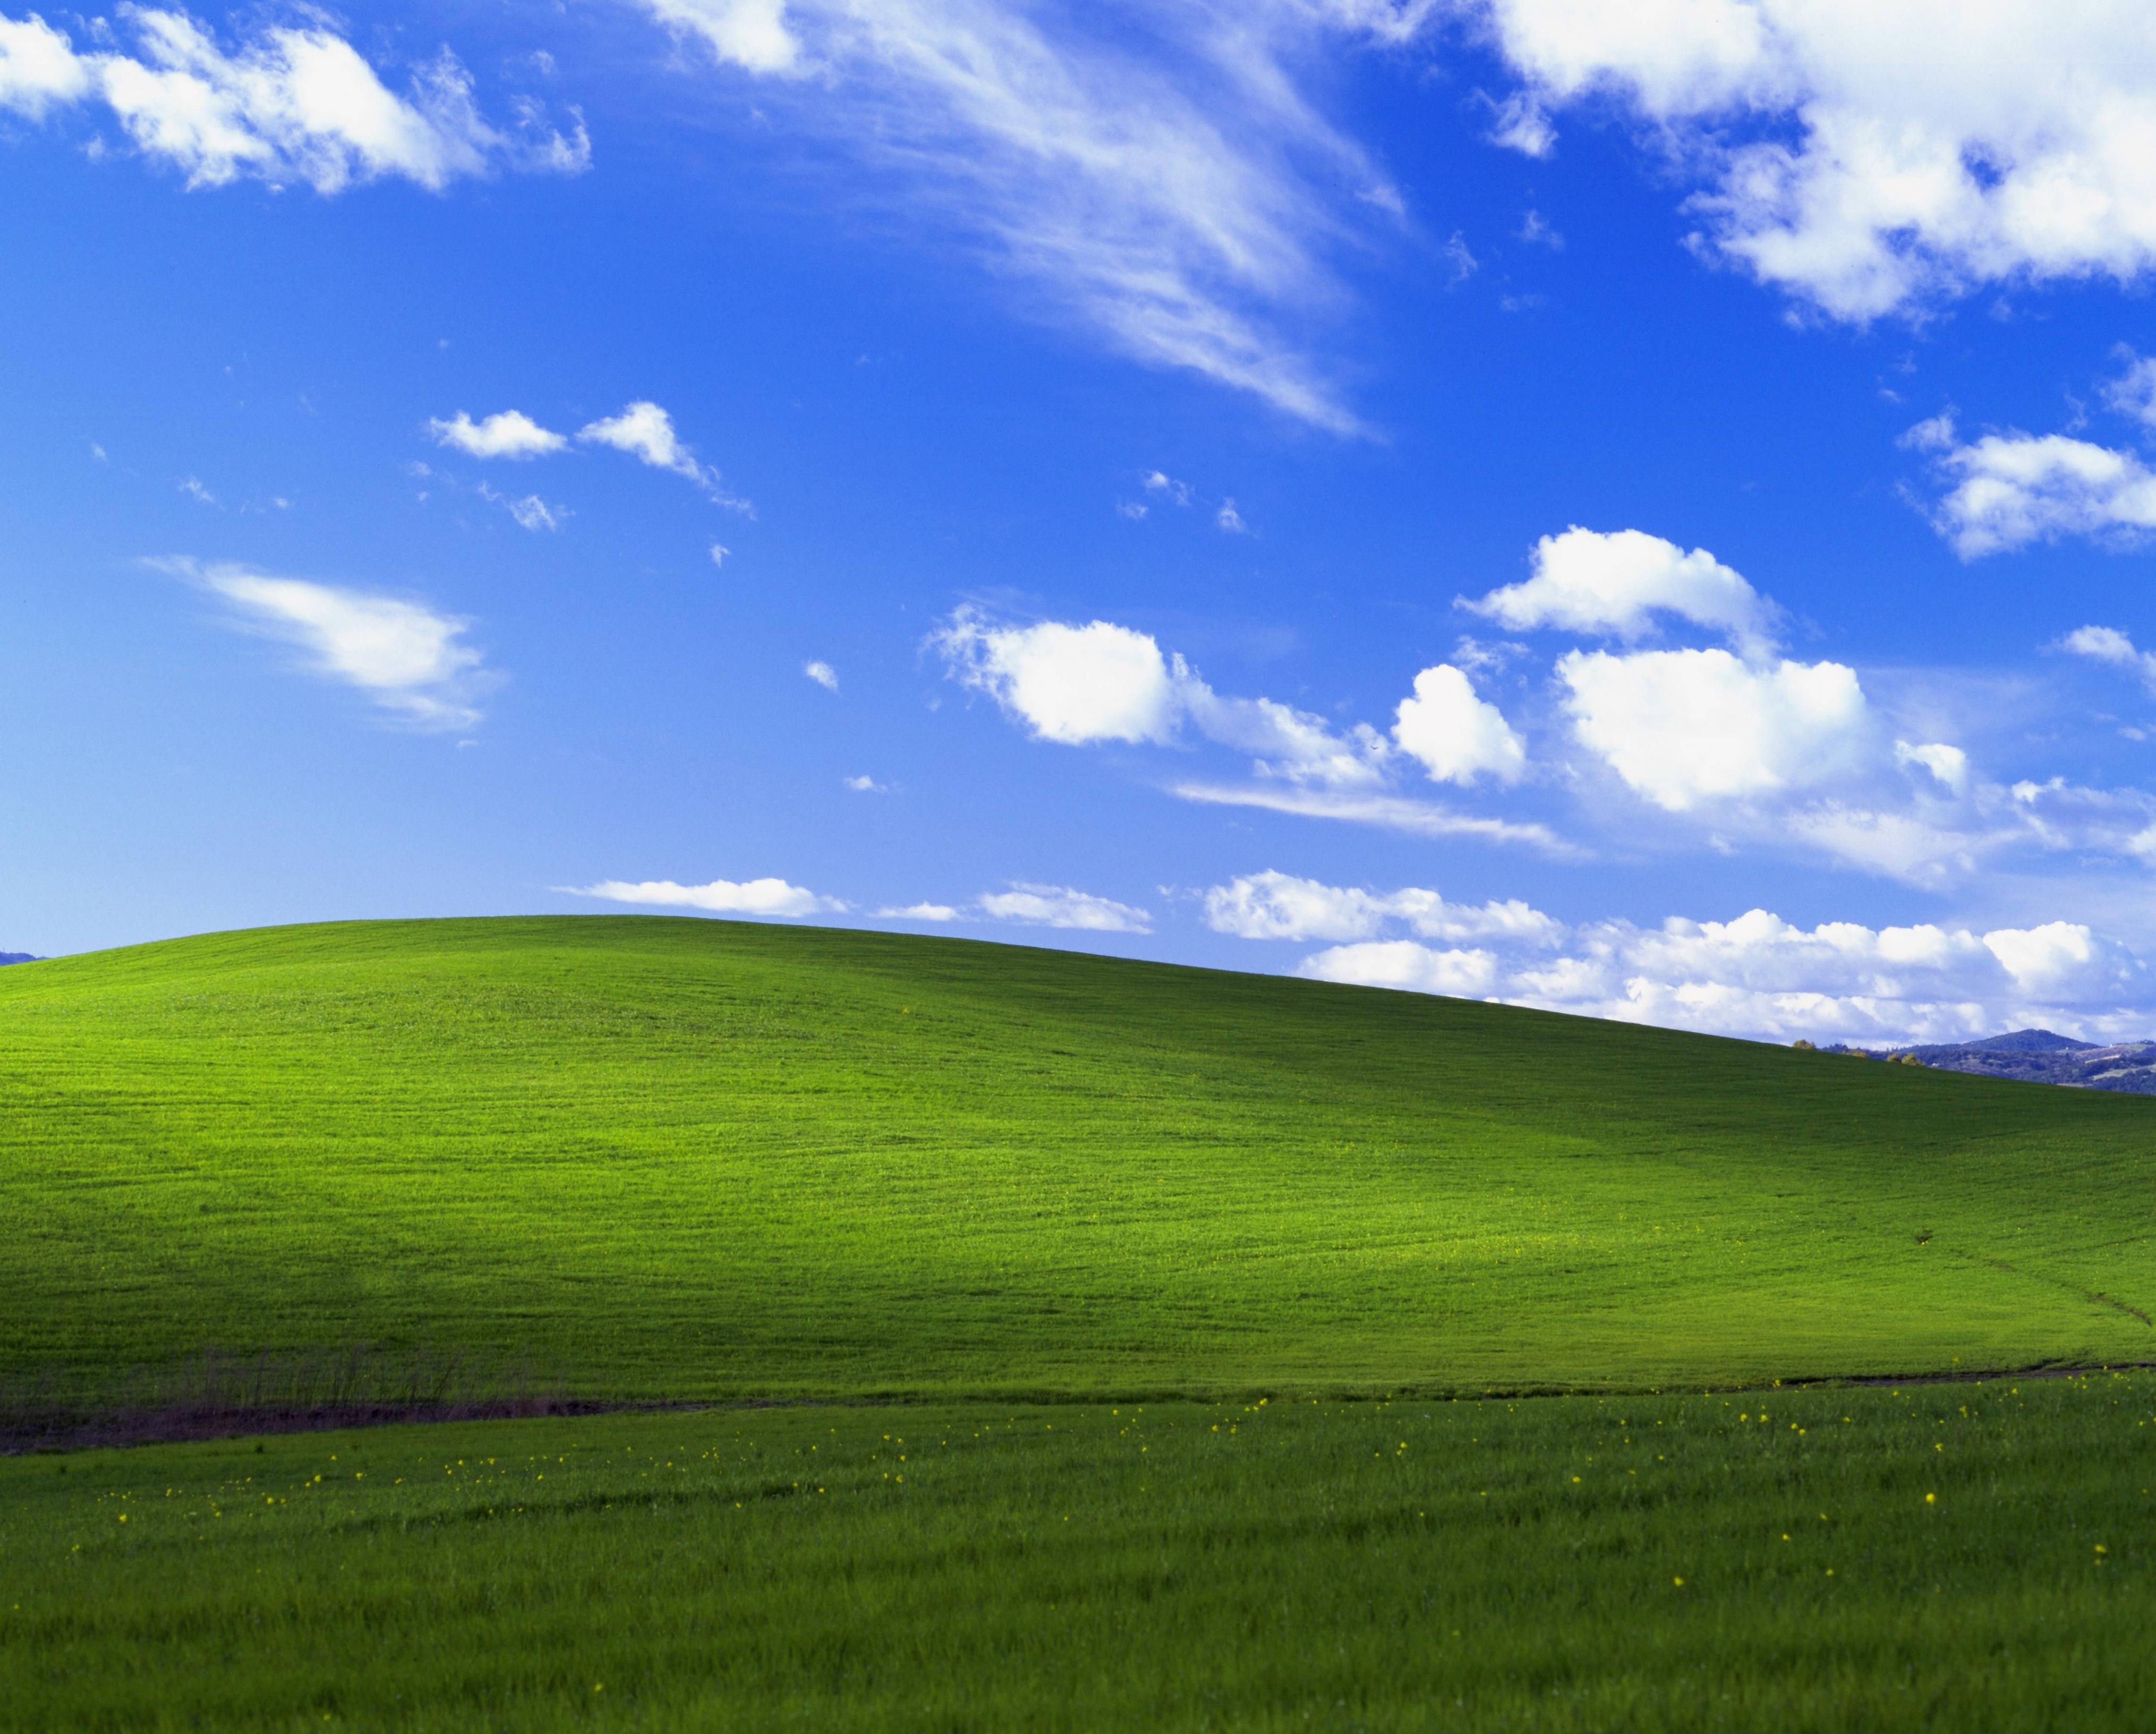 Sihirli bir Windows XP etkinleştirme aracı, geçen yıl boyunca Reddit'te herkesin gözü önünde saklanıyordu.